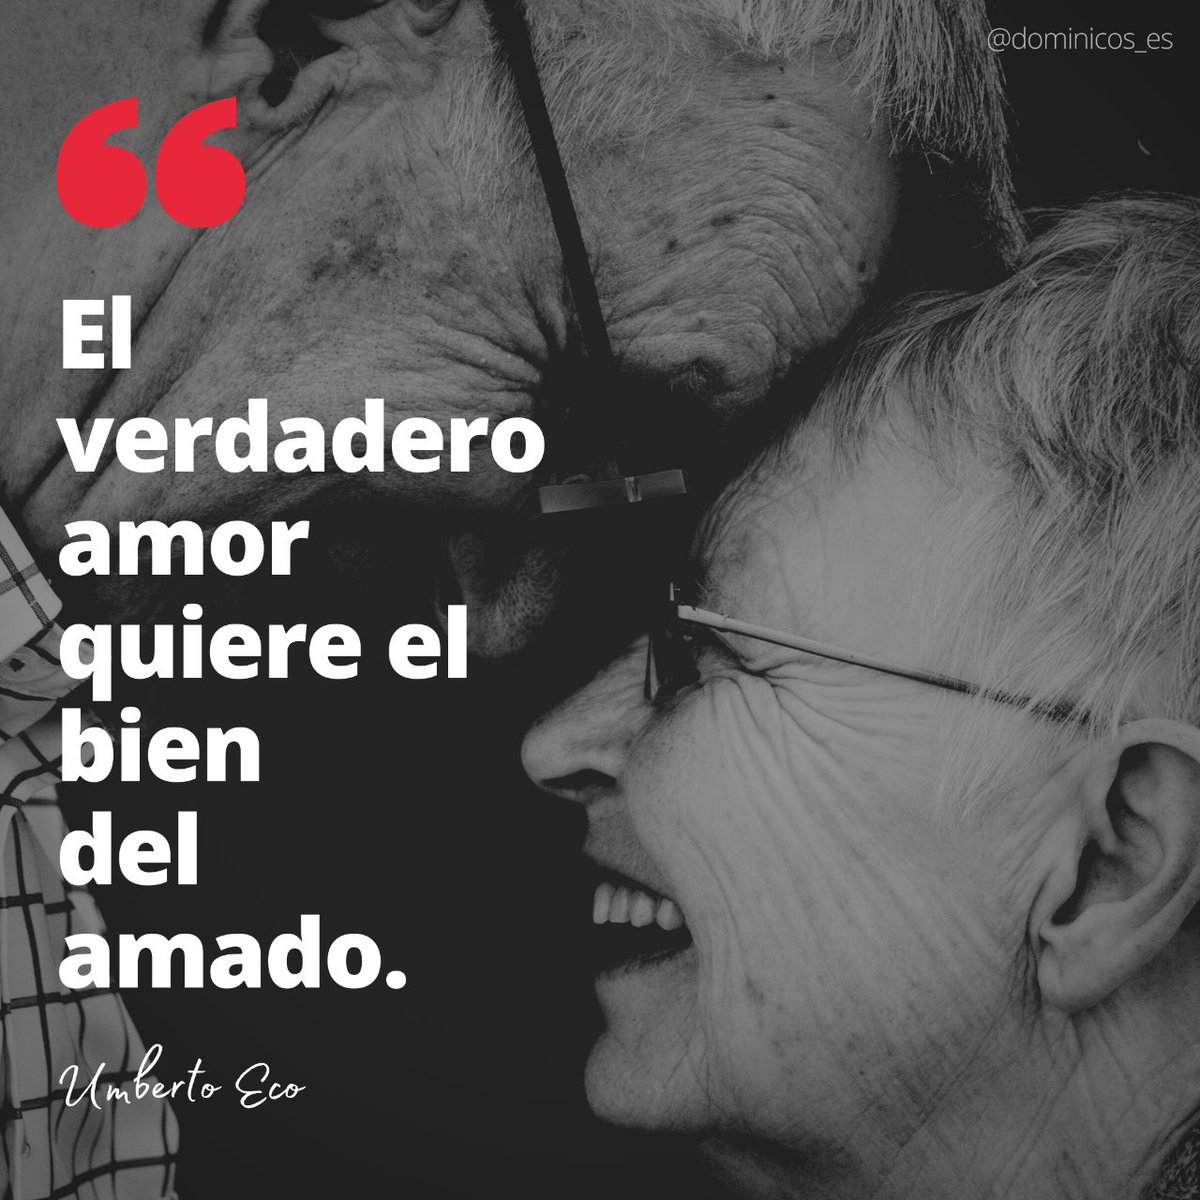 ‘El verdadero amor quiere el bien del amado’ Umberto Eco

#FelizViernes #FelizViernesATodos #FelizFinde